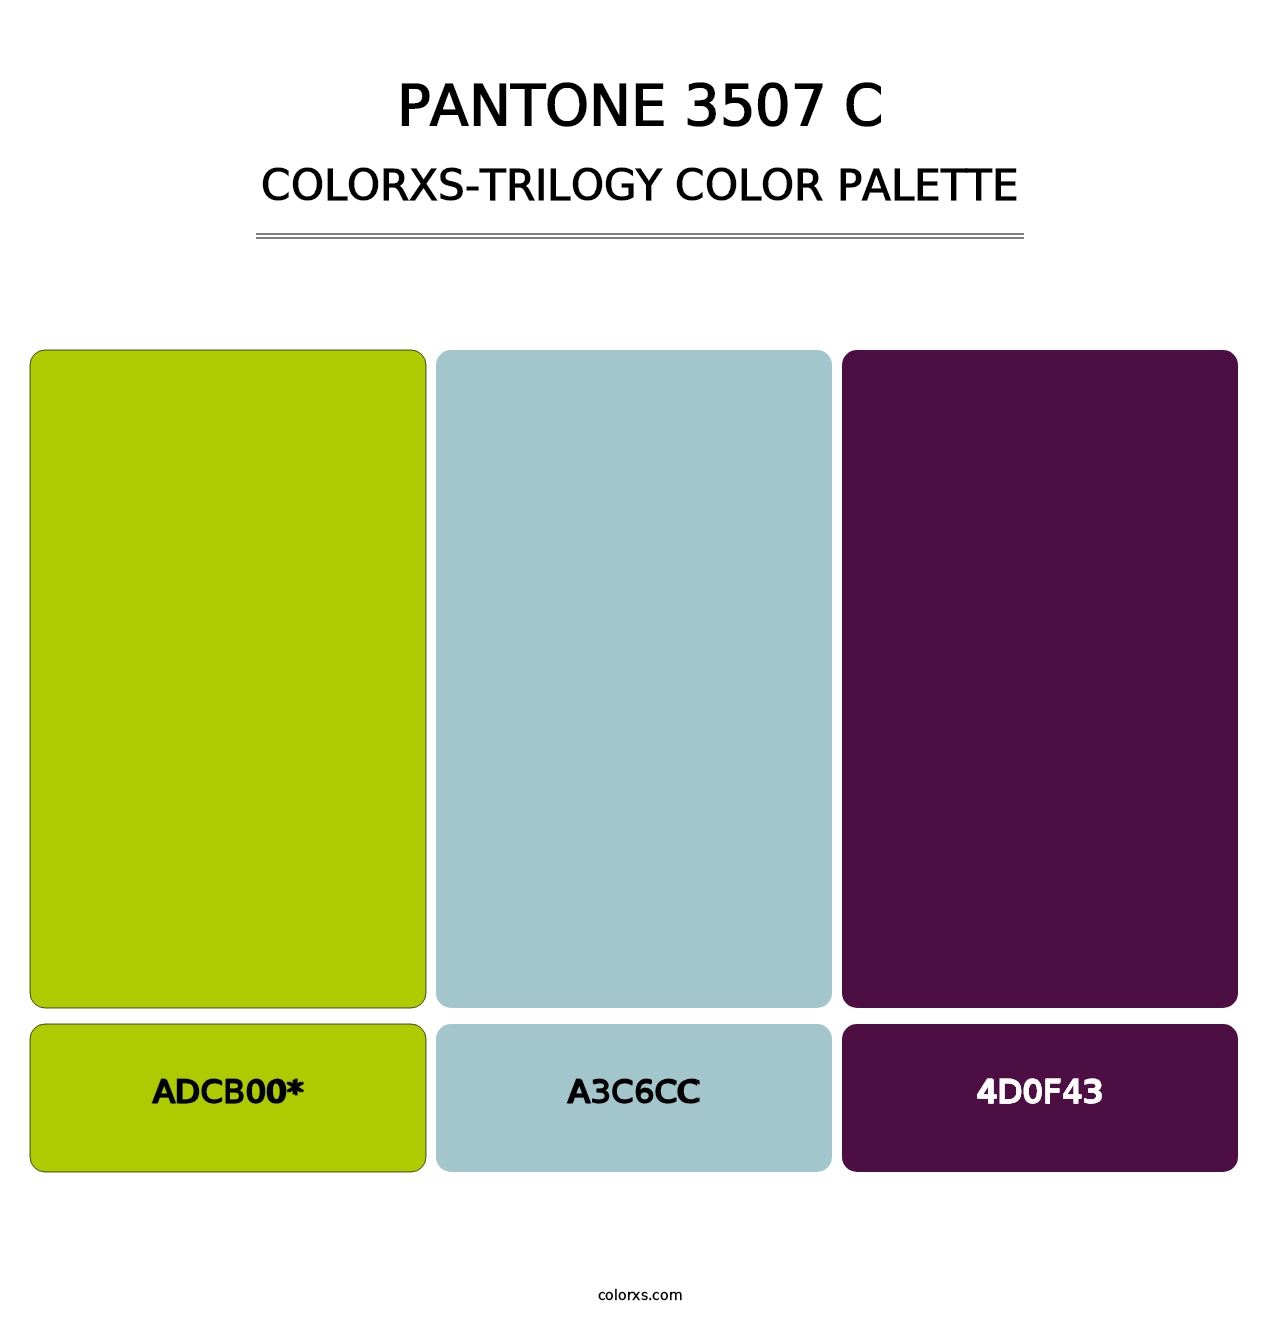 PANTONE 3507 C - Colorxs Trilogy Palette